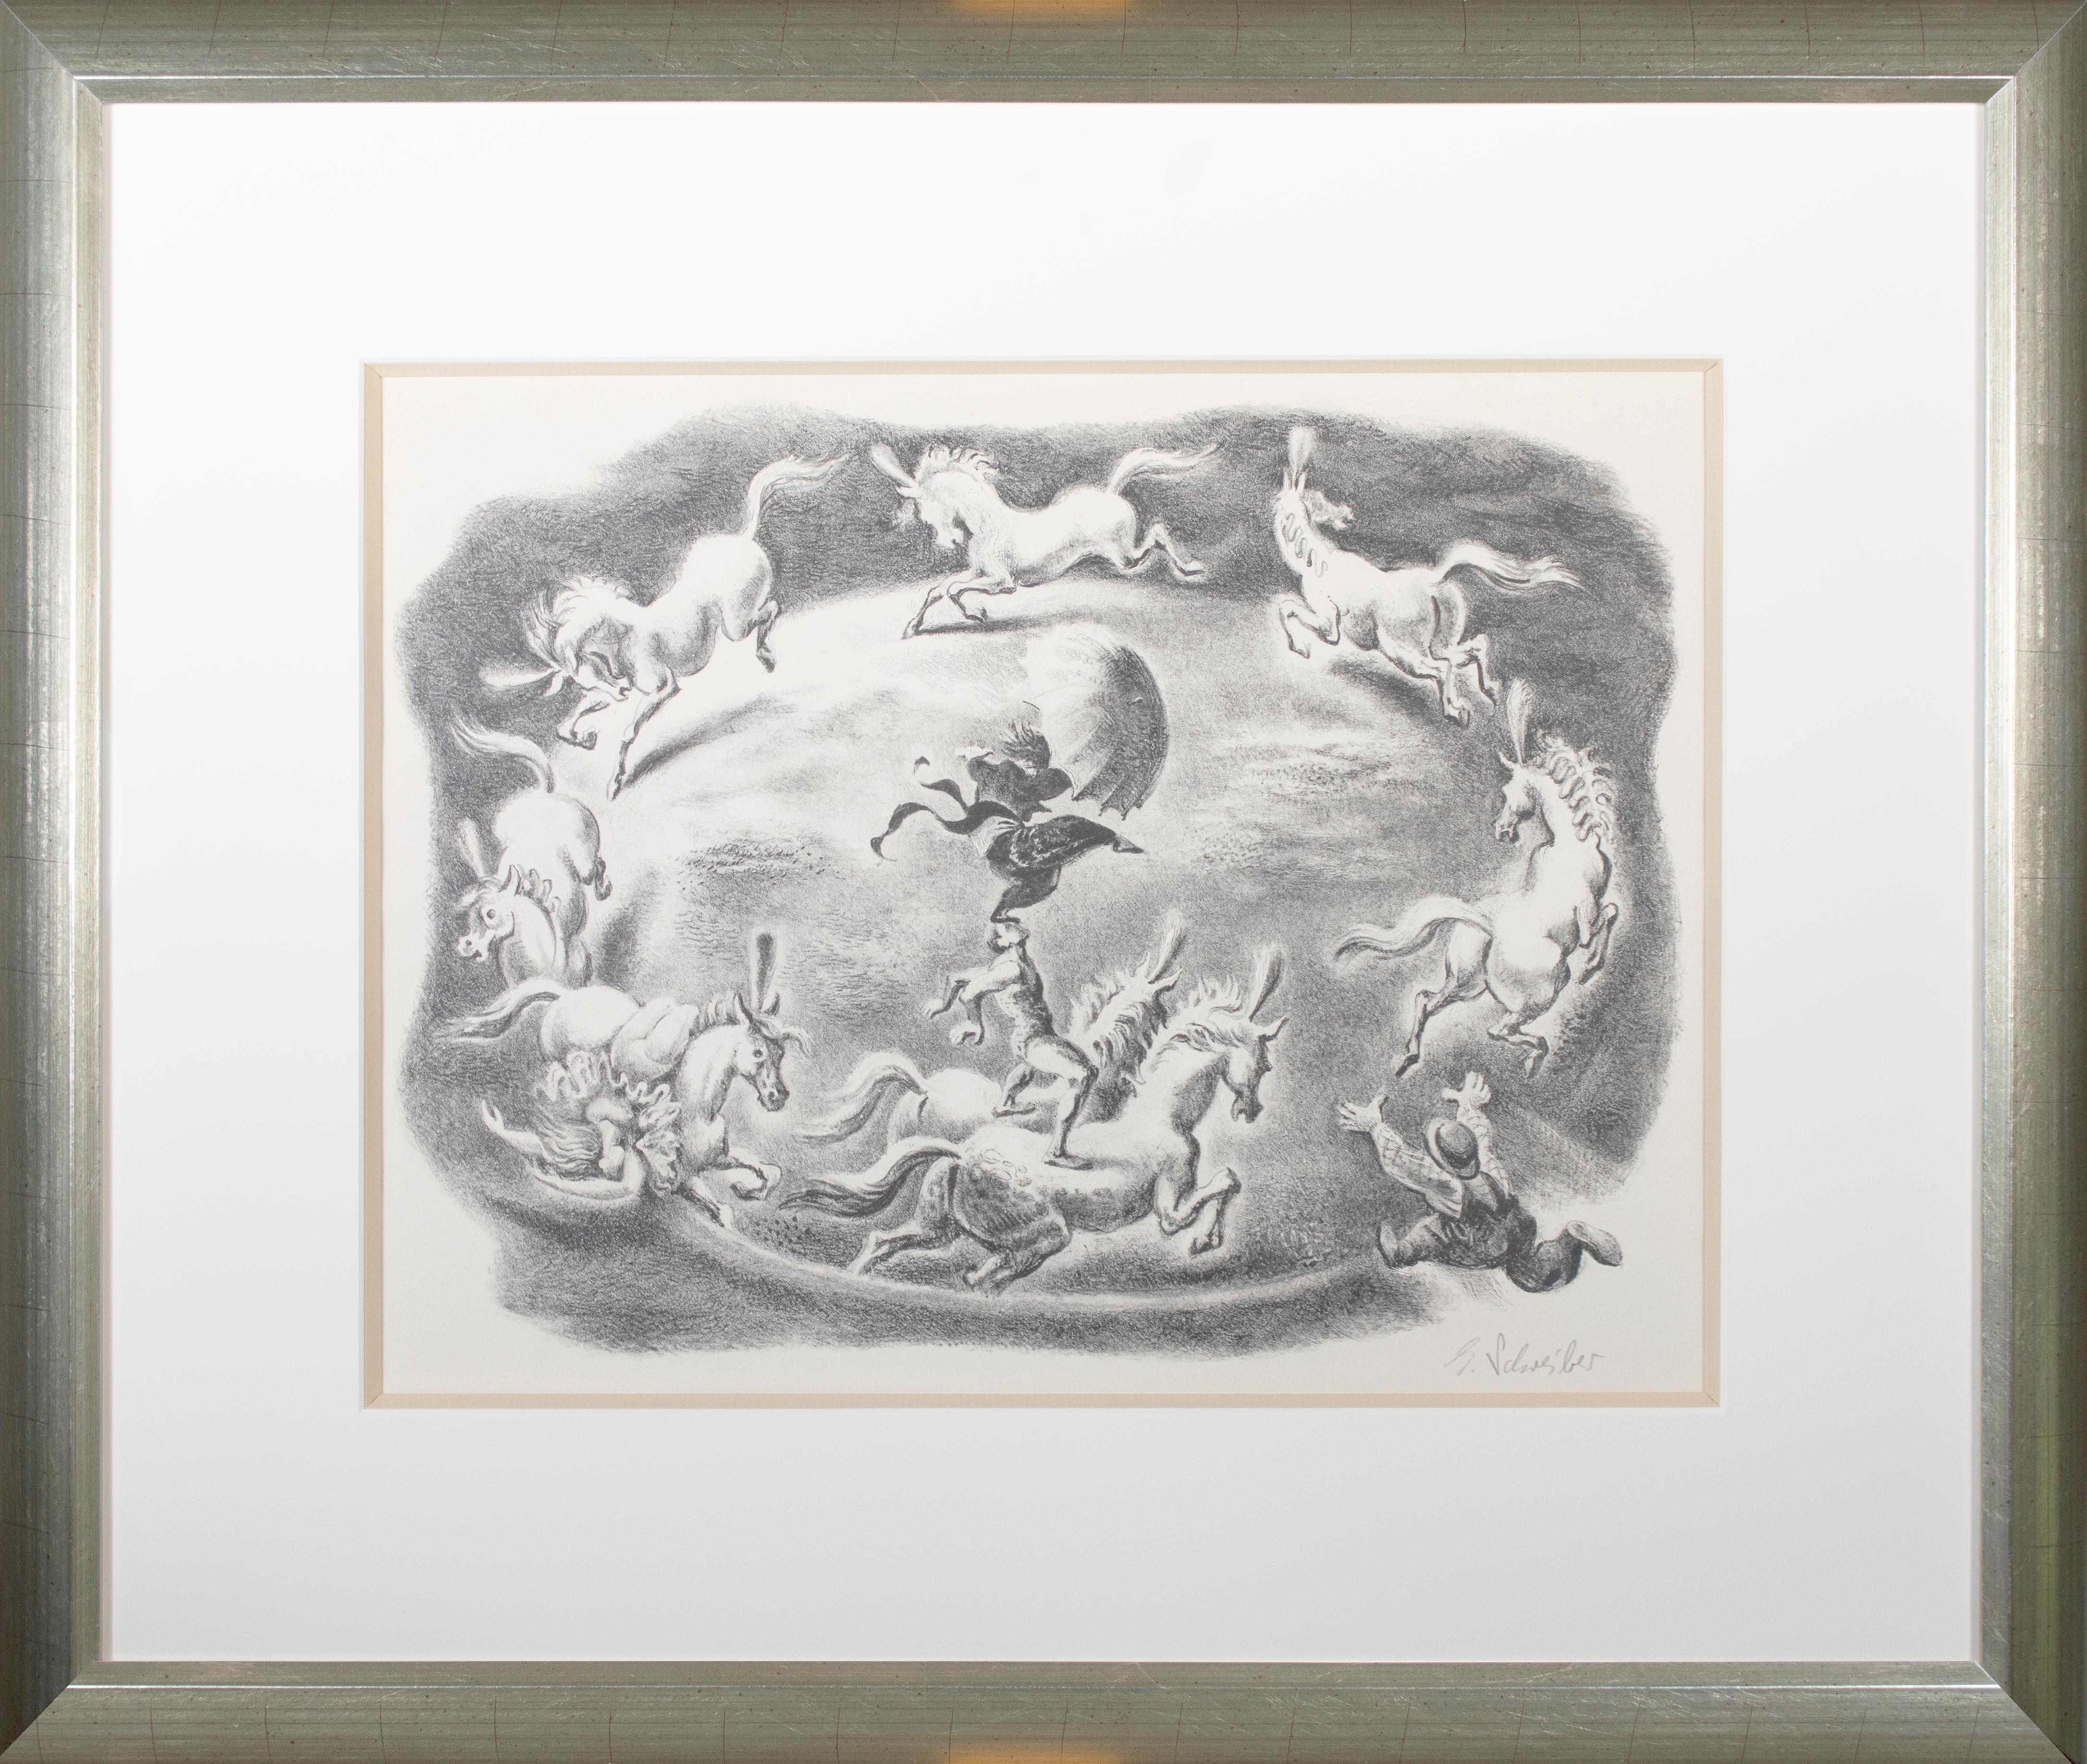 Georges Schreiber konzentrierte sich bei dieser Lithografie auf den Nervenkitzel des Zirkus, indem er die kreisförmige Komposition von der zentralen Manege übernahm. Hier vollführen Akrobaten auf dem Rücken einer Schar galoppierender Pferde